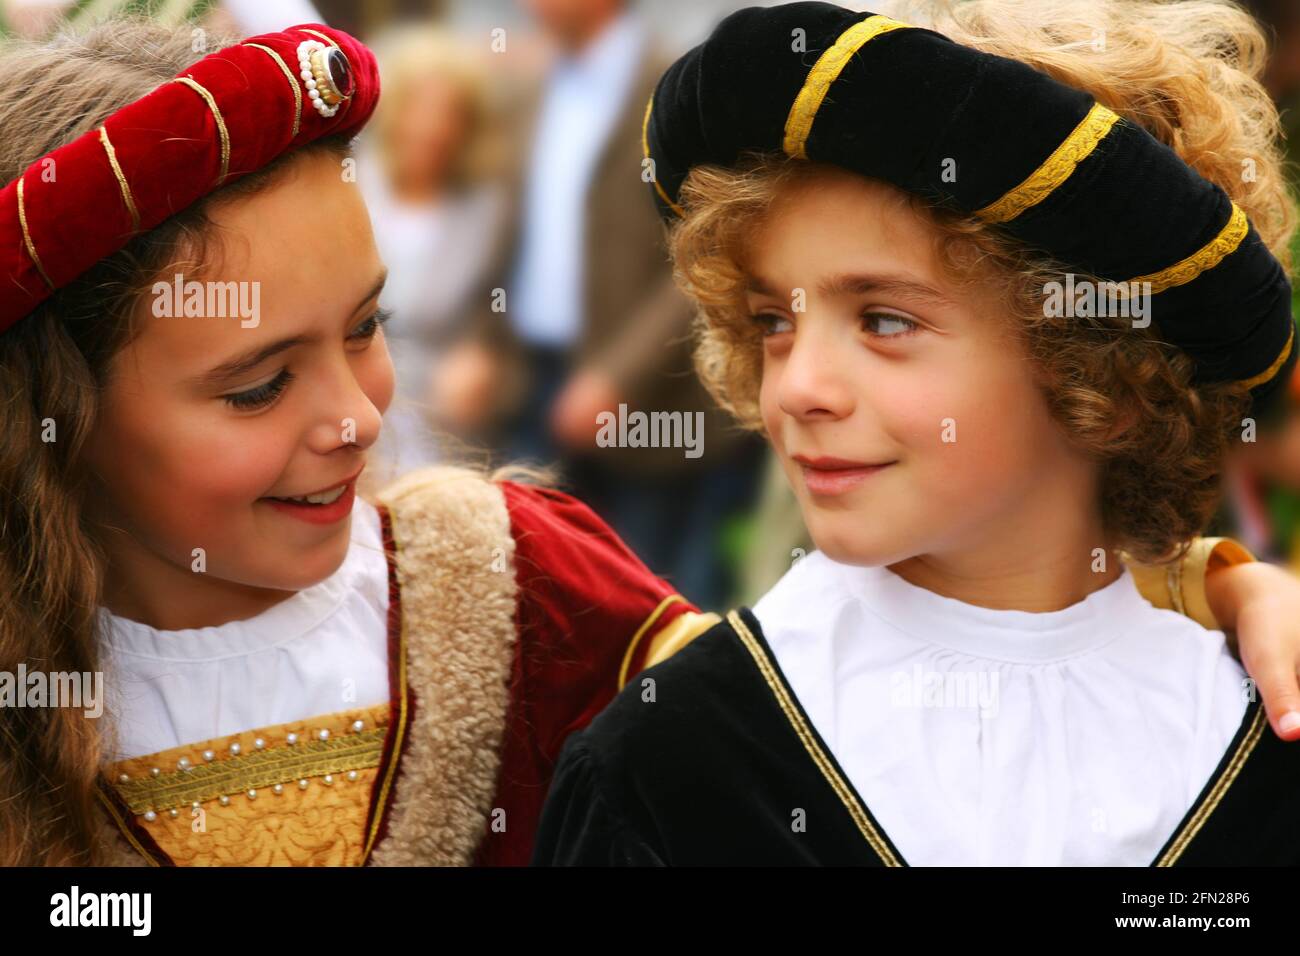 Landshuter Hochzeit beim historischen Festzug Mädchen und Junge mit Verkleidung und Kostüm sehen sich verliebt  in die Augen Stock Photo